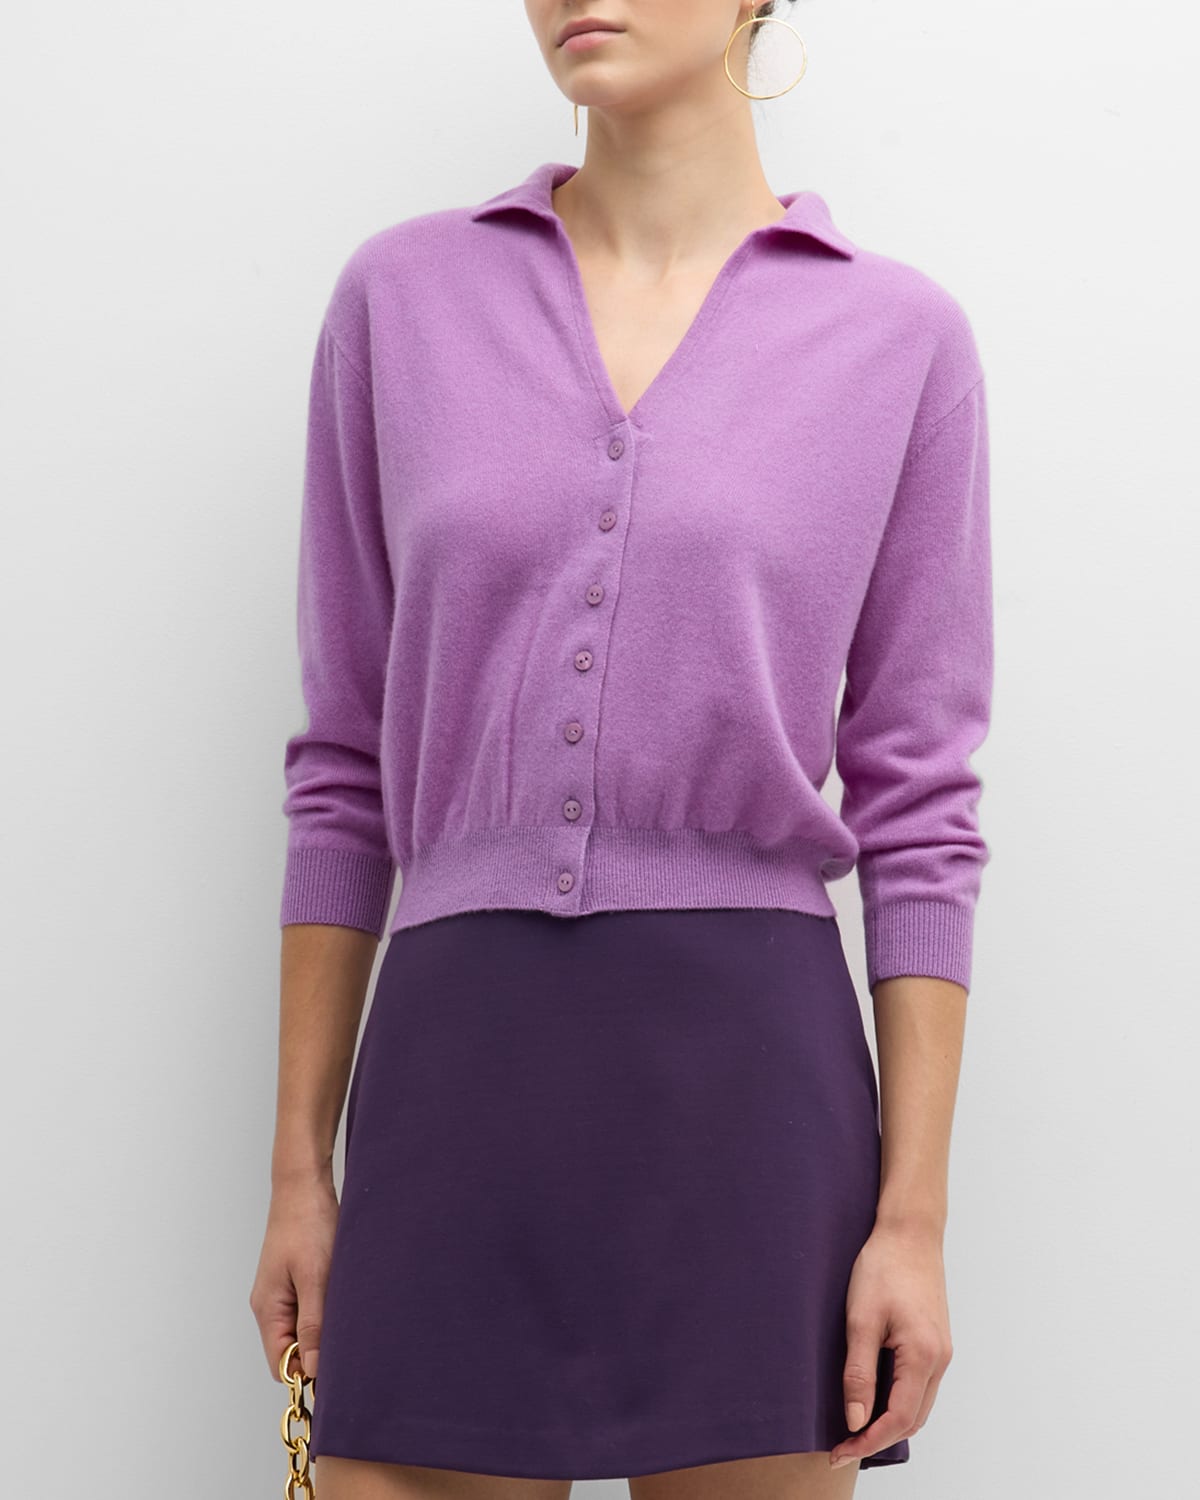 Grey/Ven Lauren Cardigan Sweater